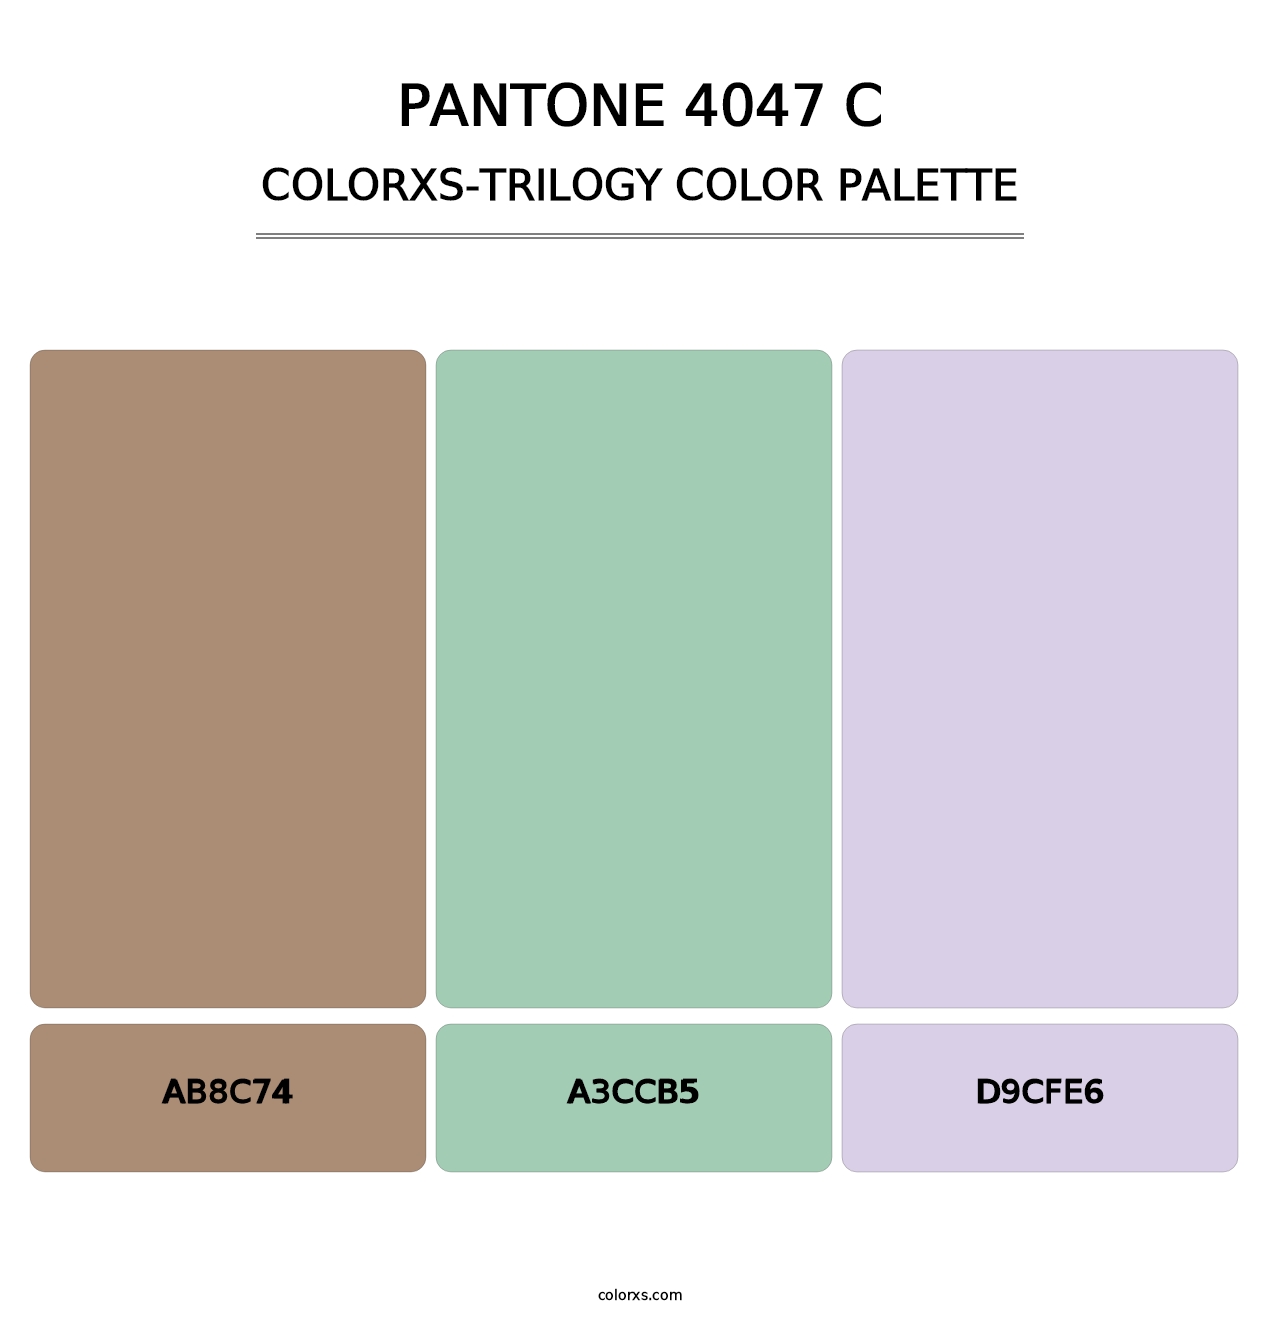 PANTONE 4047 C - Colorxs Trilogy Palette